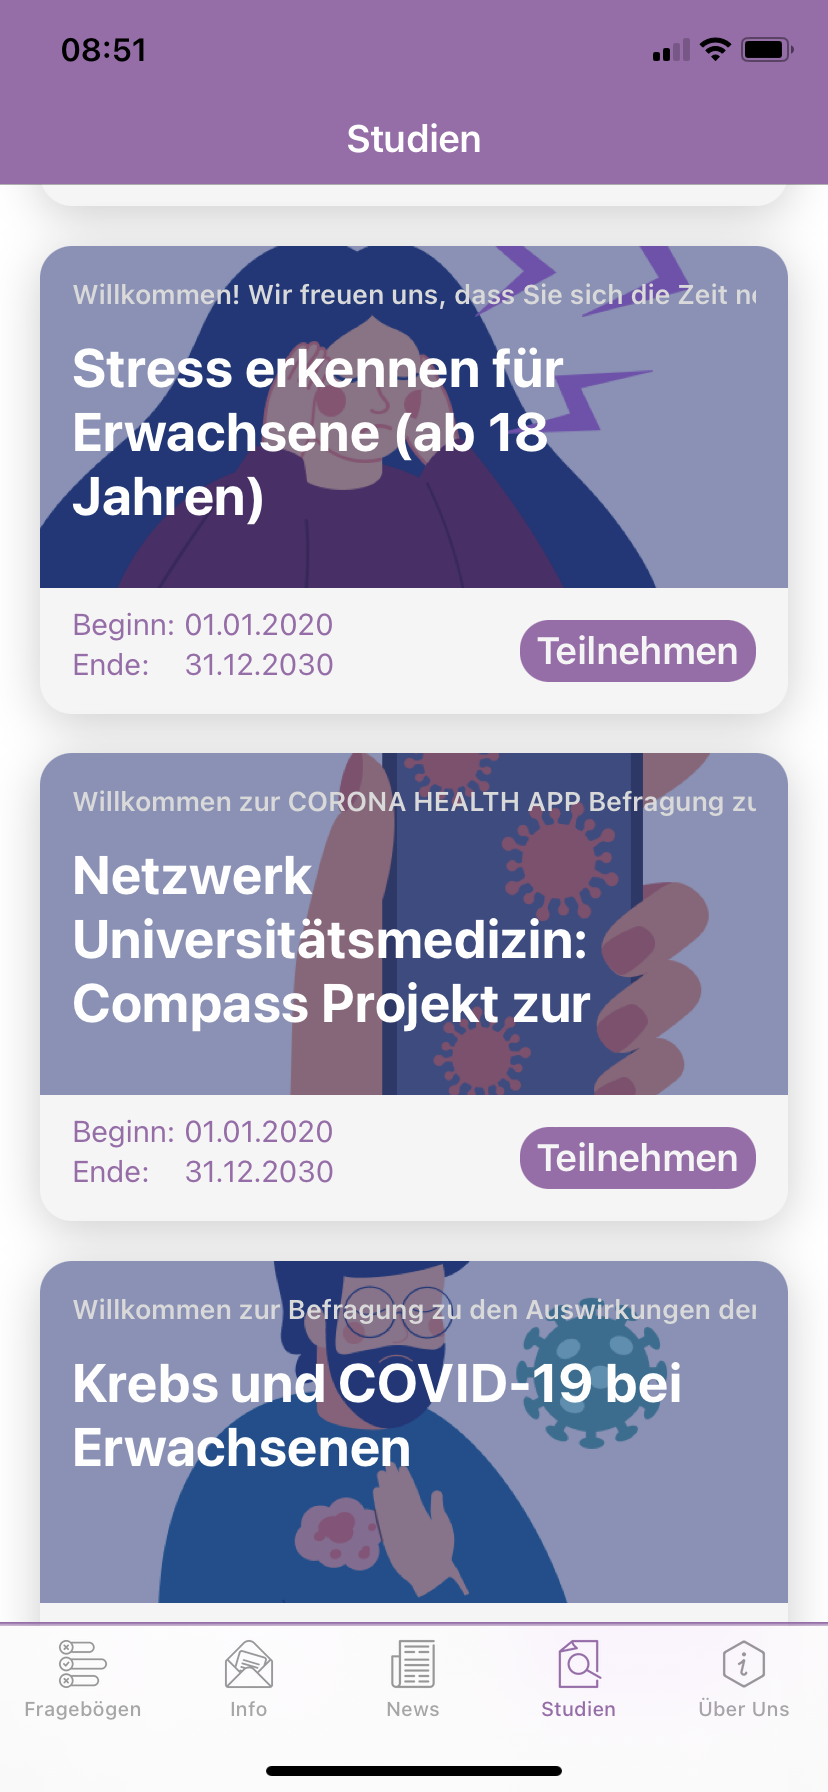 Das Bild zeigt einen Screenshot der Umfrage Krebs und Covid-19 in der Corona Health App 